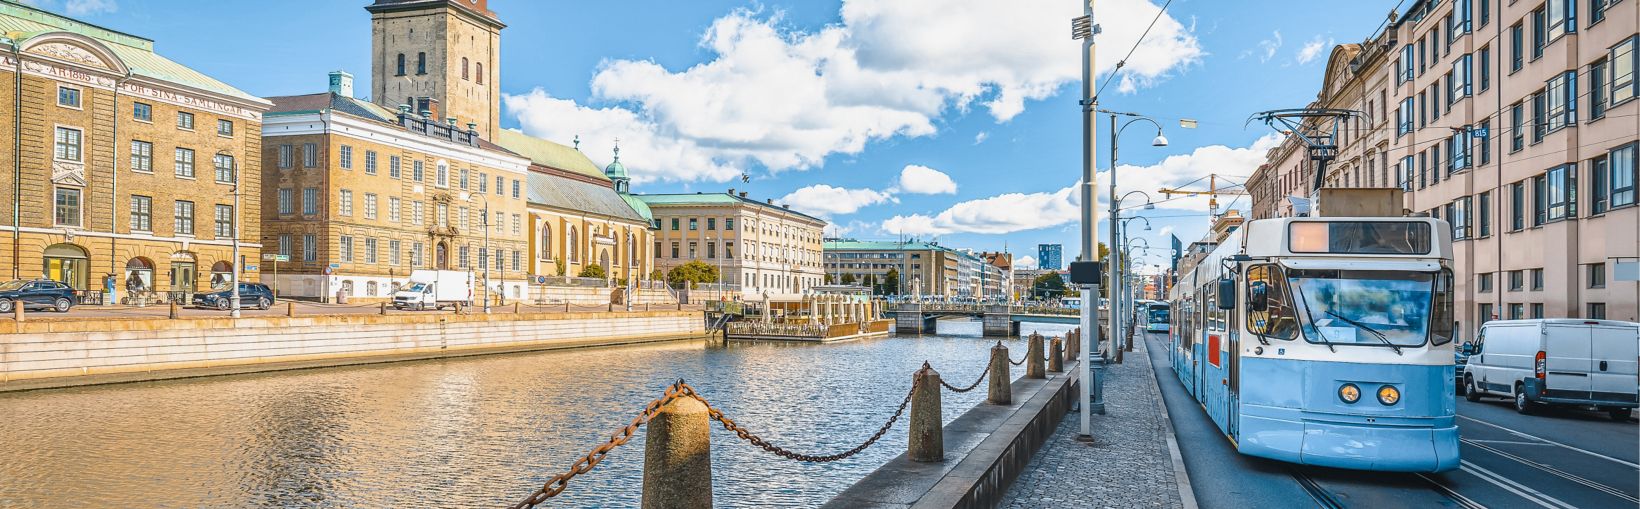 Stadt Göteborg, Straßenzug mit schöner Architektur, die schwedische Provinz Västra Gotaland